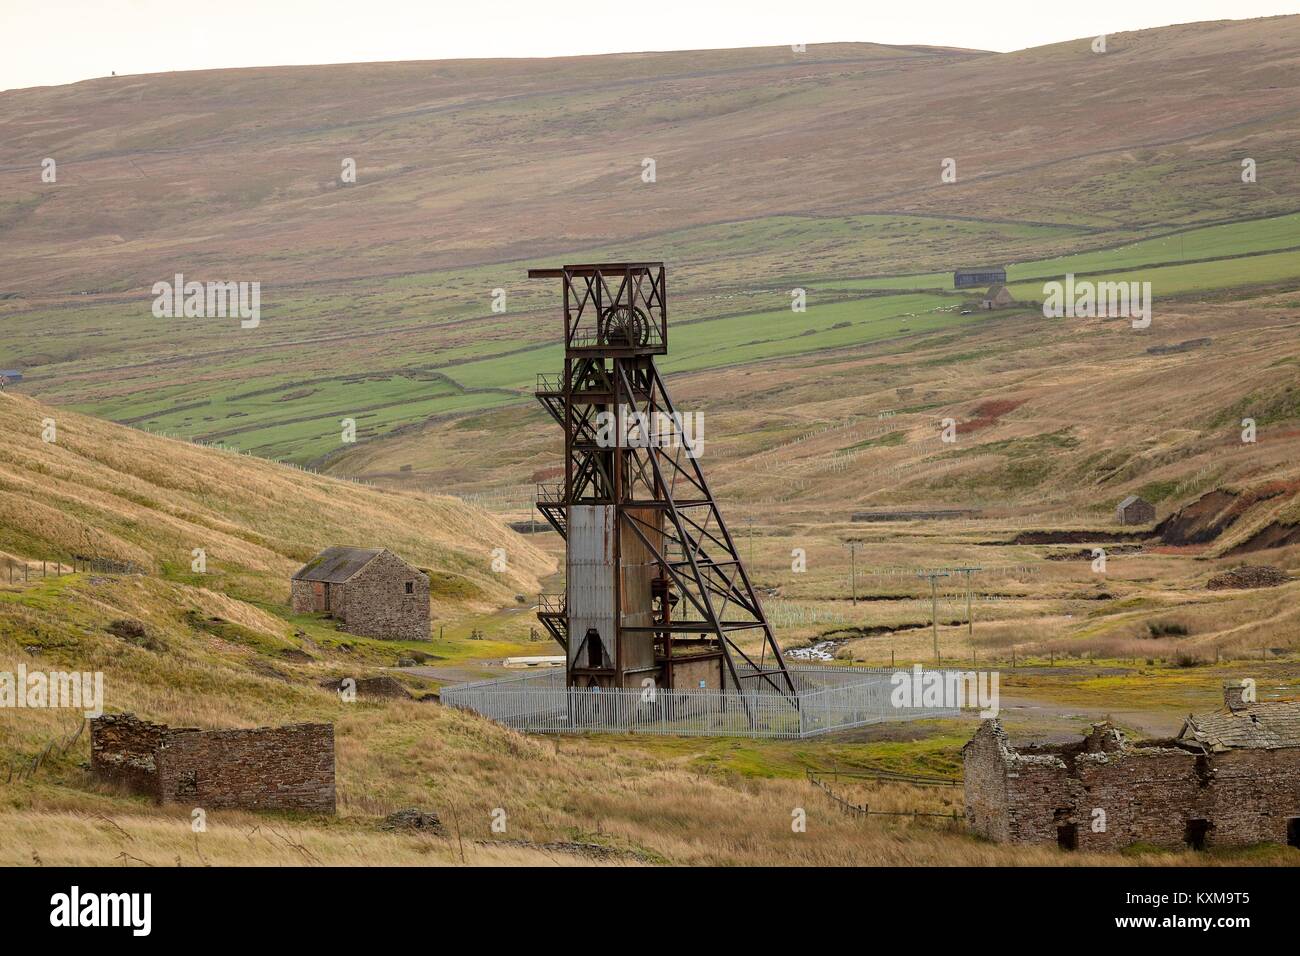 La mine désaffectée de Grove, bâtiments de la mine de râteau Rookhope District, Weardale, North Pennines, County Durham, Angleterre, Royaume-Uni, Europe. Banque D'Images